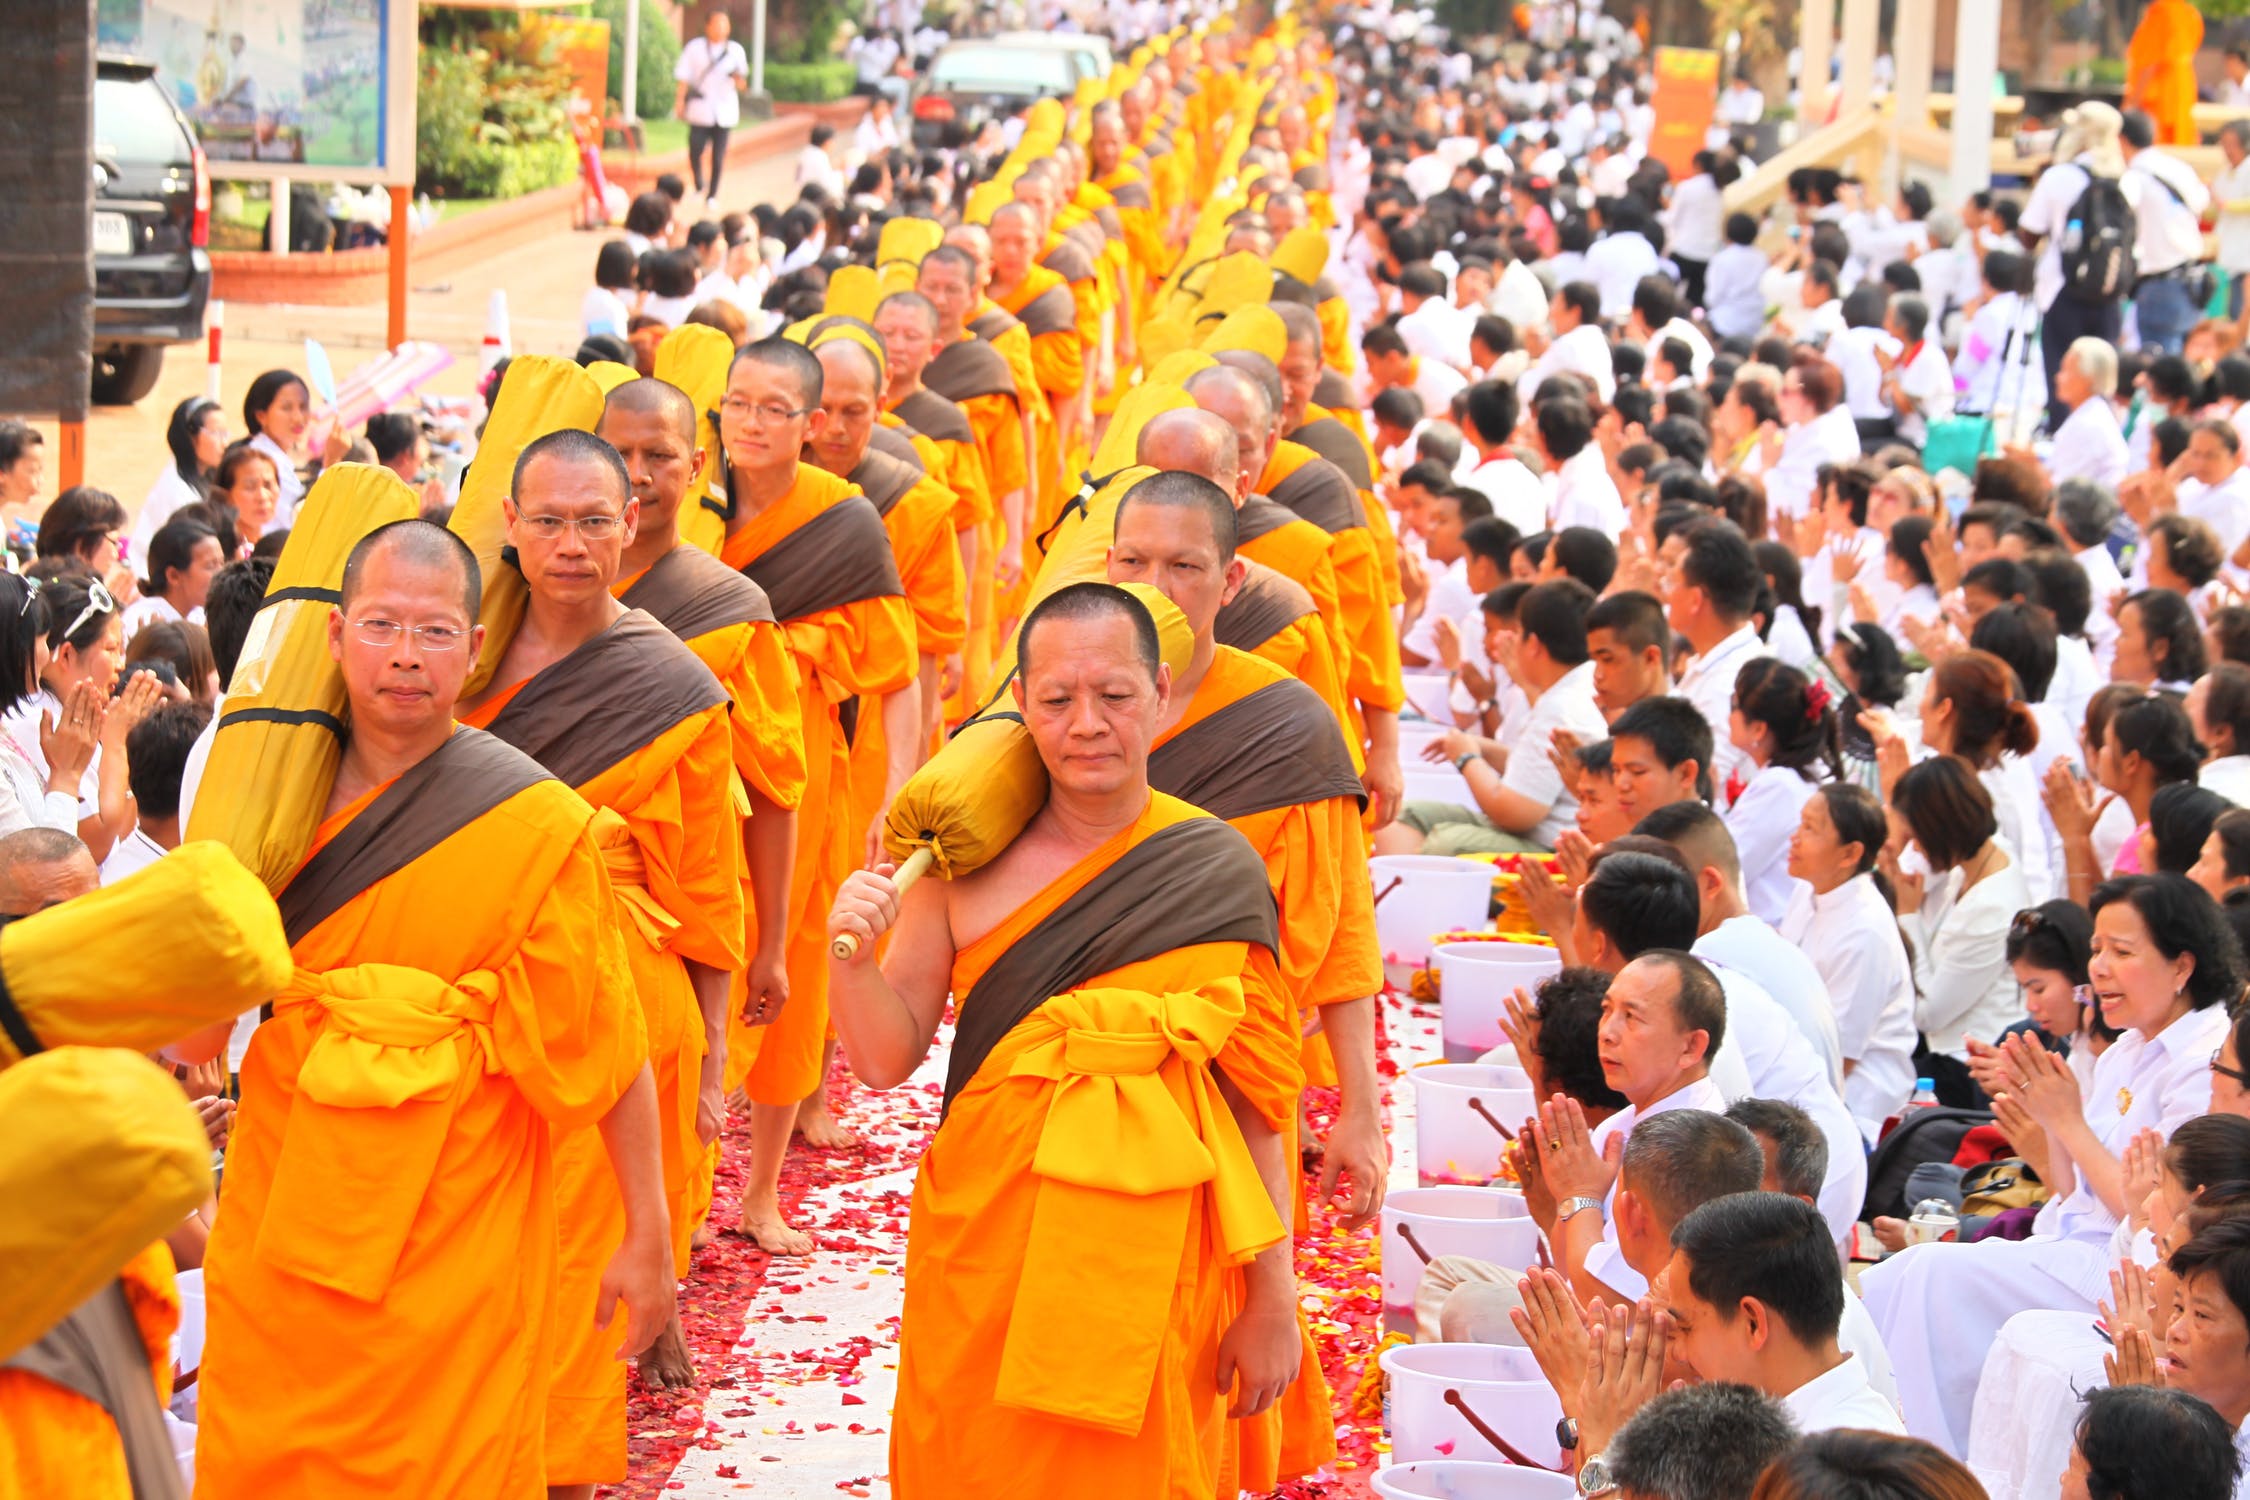 Văn hóa Thái Lan chịu ảnh hưởng sâu sắc từ các tư tưởng Phật giáo